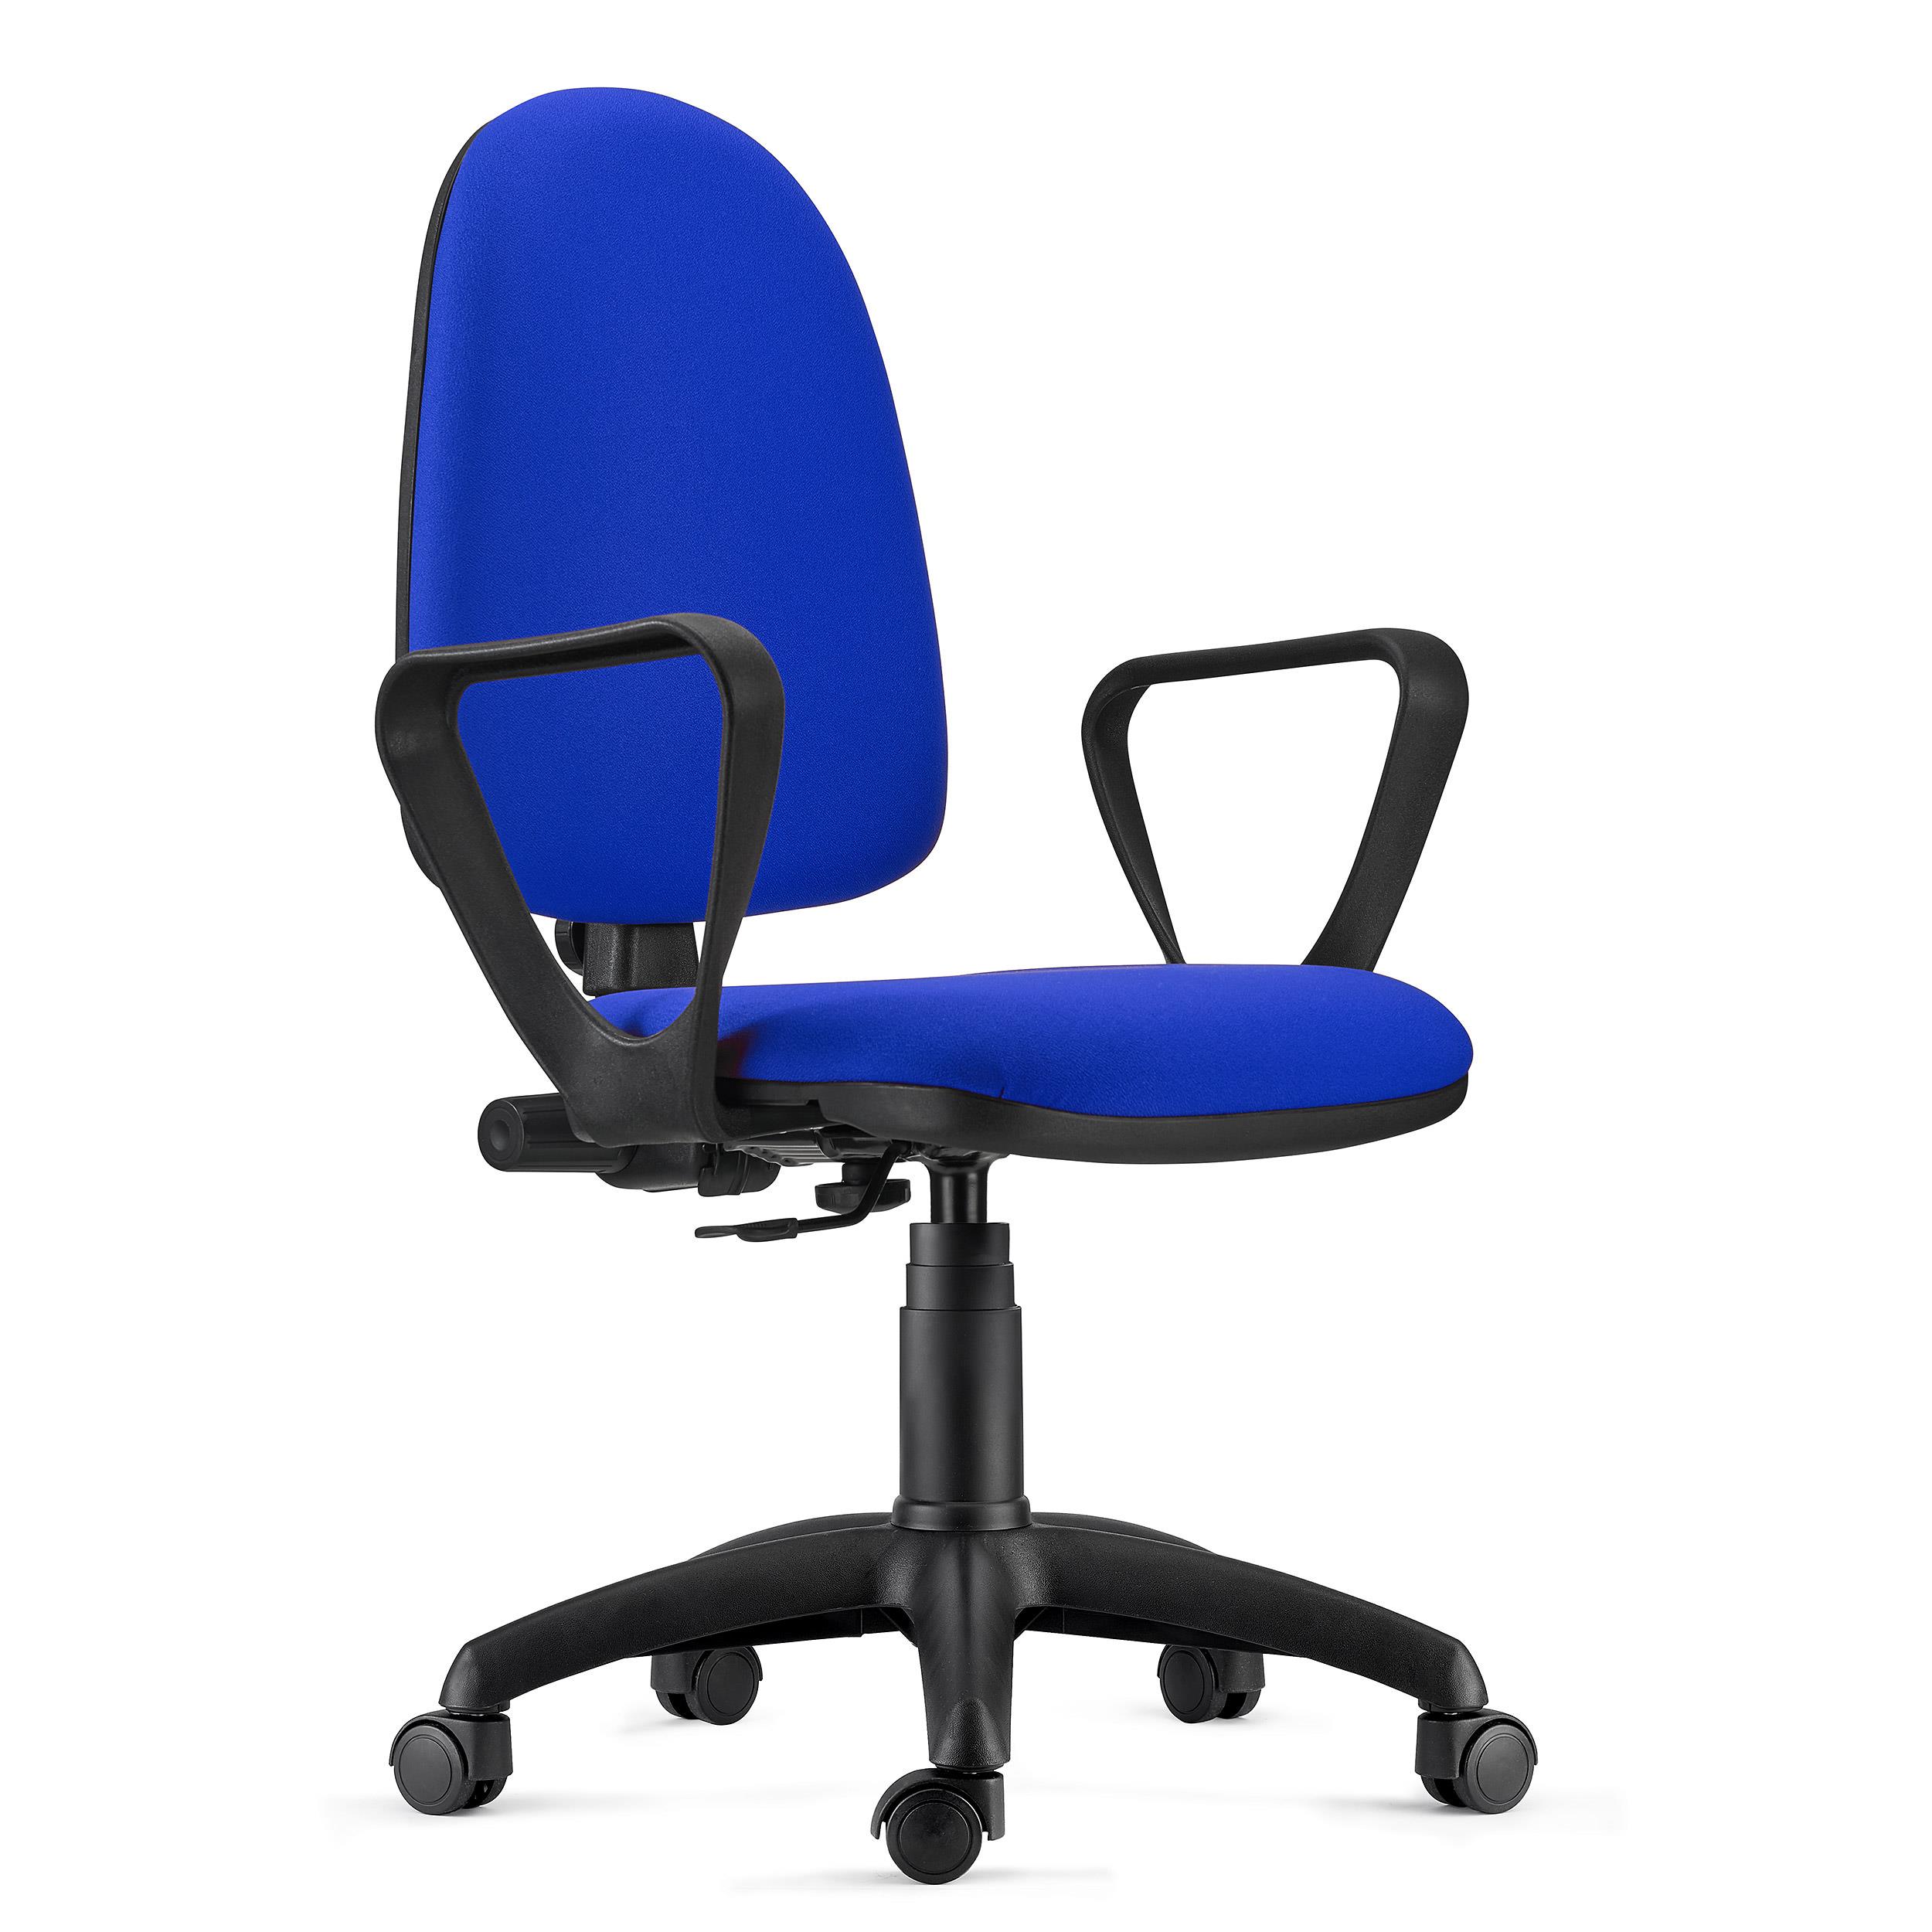 Bürodrehstuhl ANDREA, robust und vielseitig, Stoffbezug, verstellbare Rückenlehne, Armlehnen, Farbe Blau